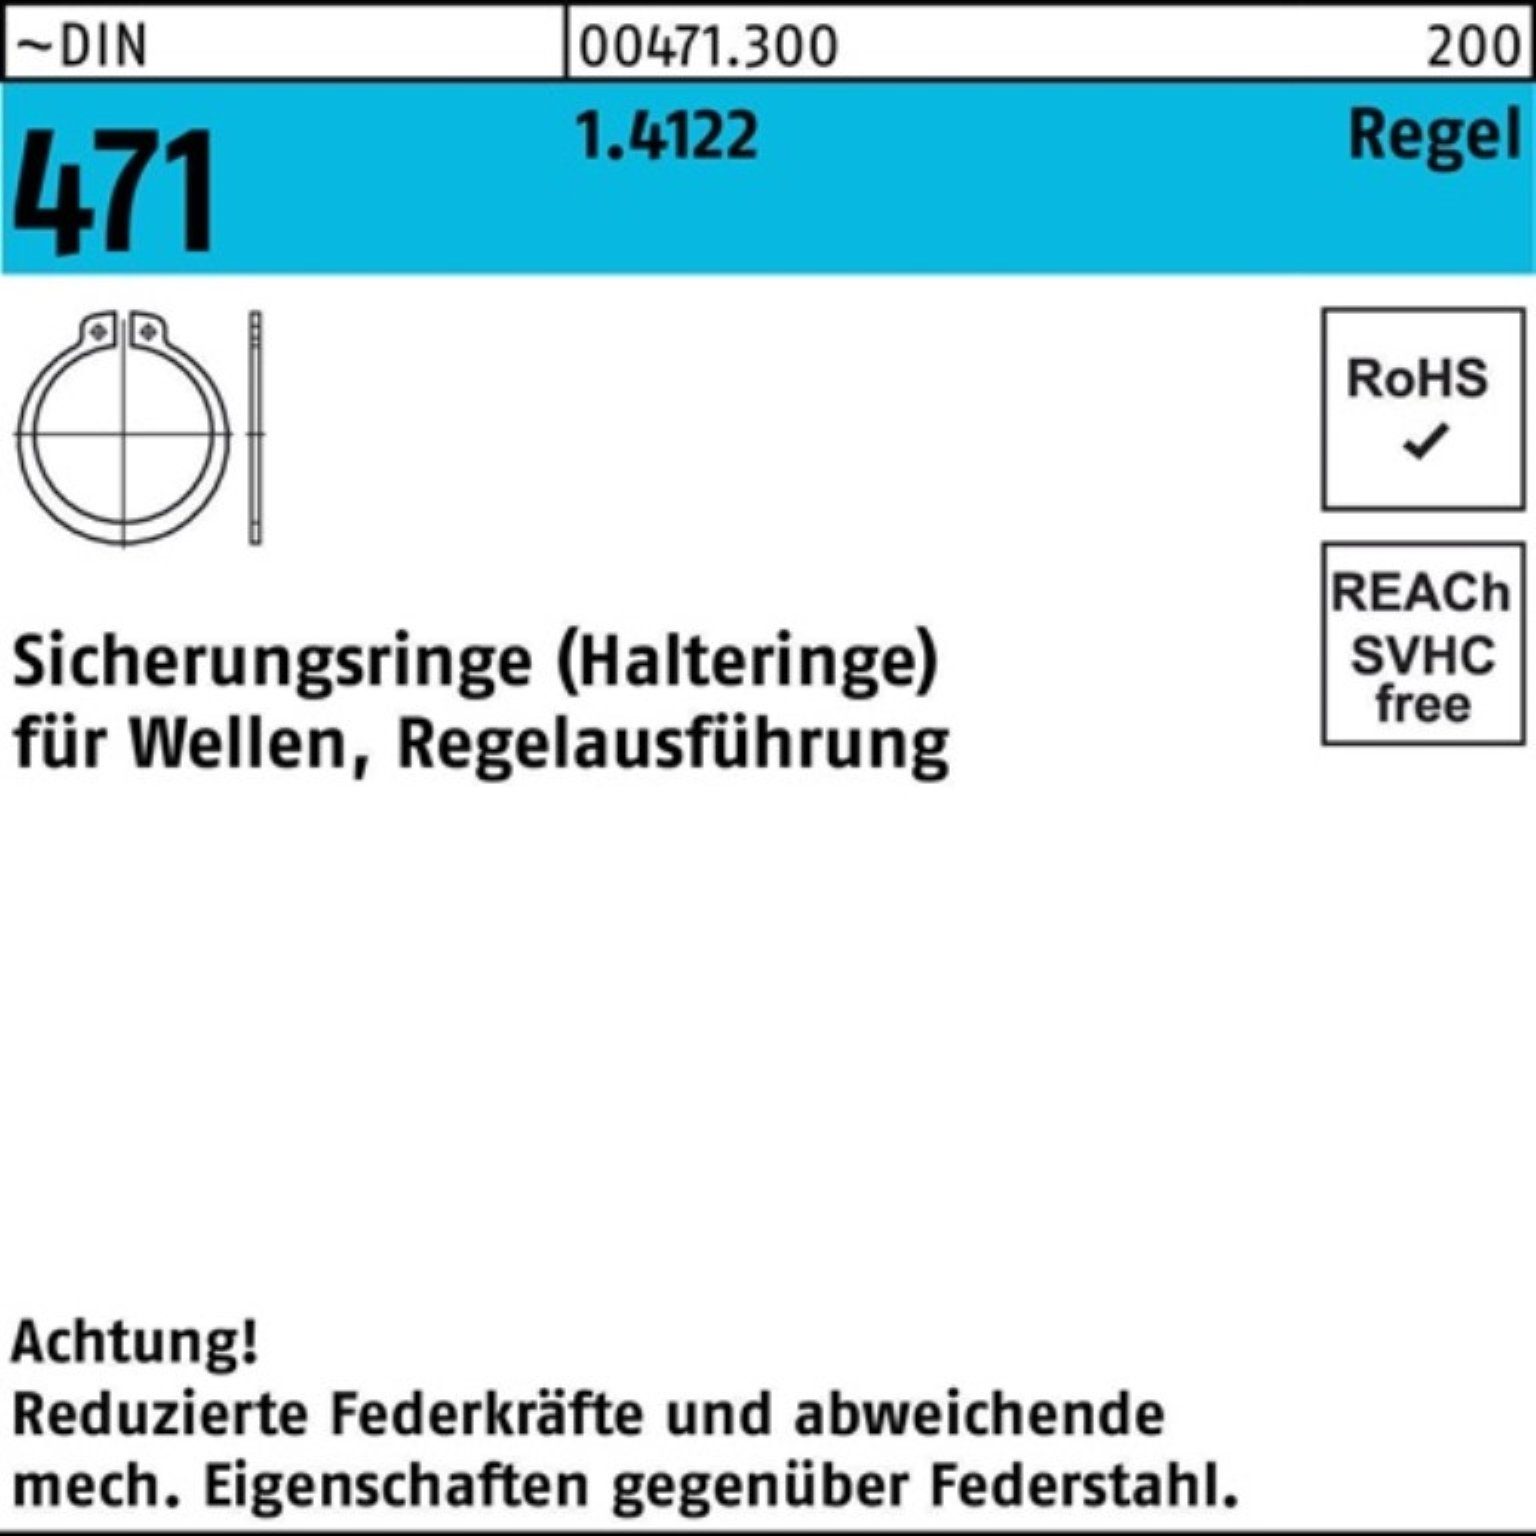 Reyher Sicherungsring 2,5 100er 1.4122 471 1 ~ DIN Sicherungsring Pack Regelausf. 68x Stück